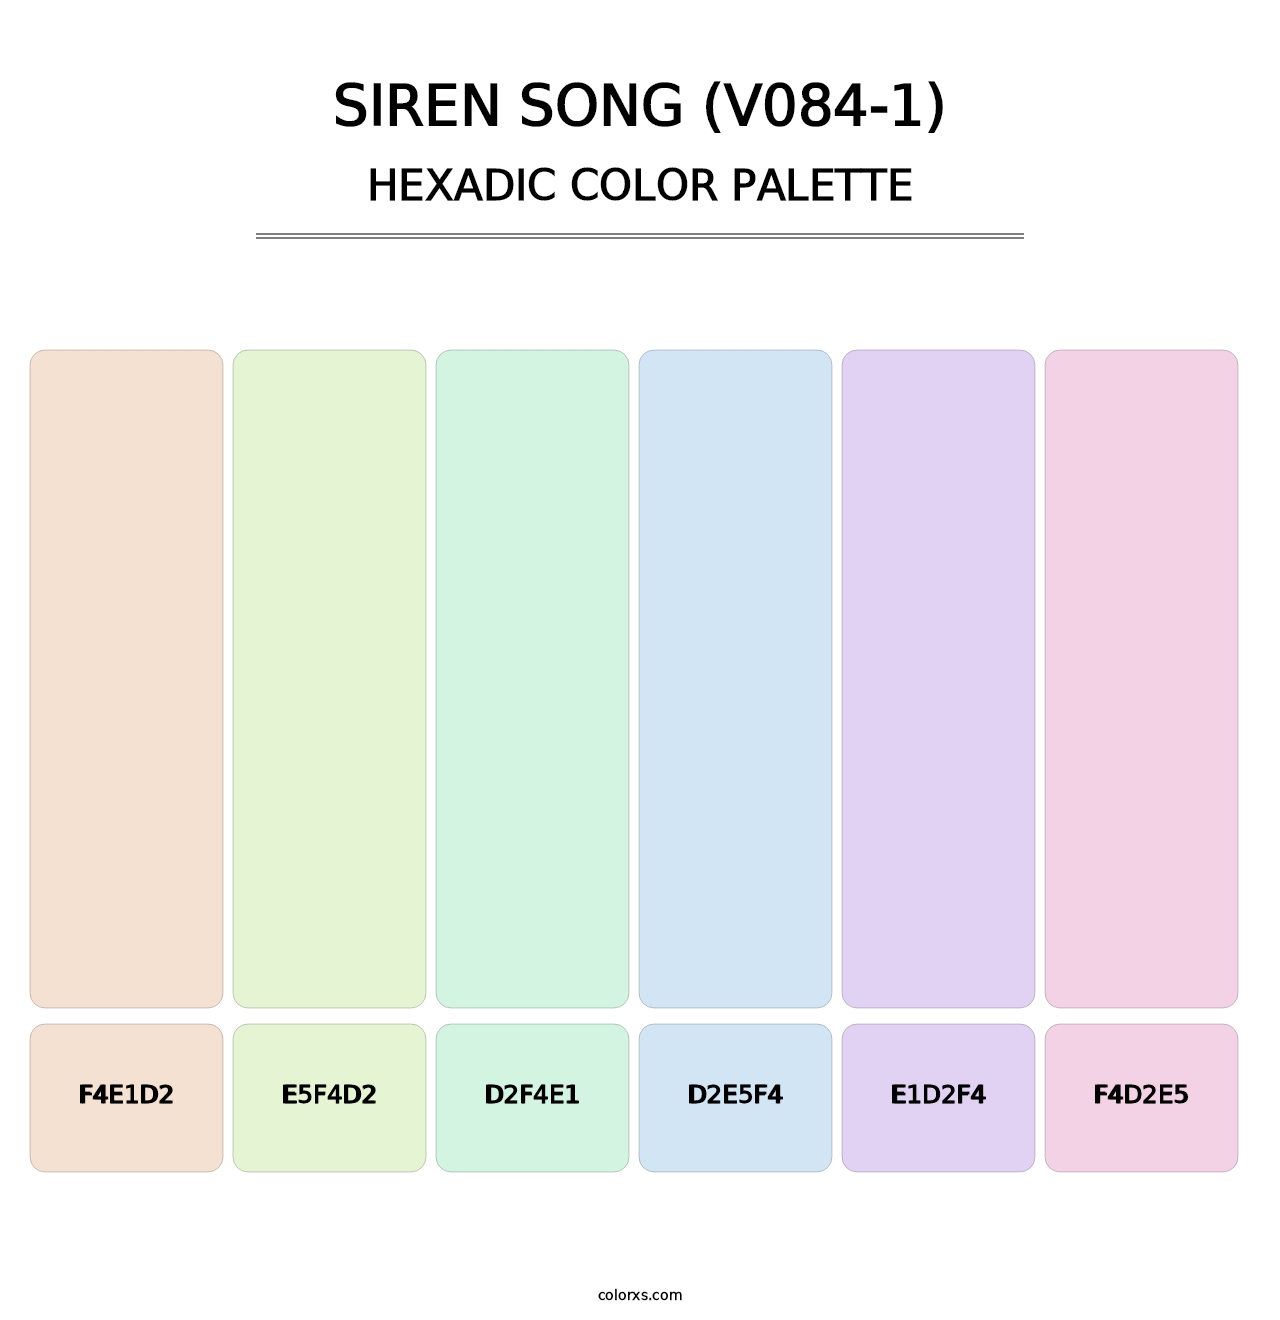 Siren Song (V084-1) - Hexadic Color Palette